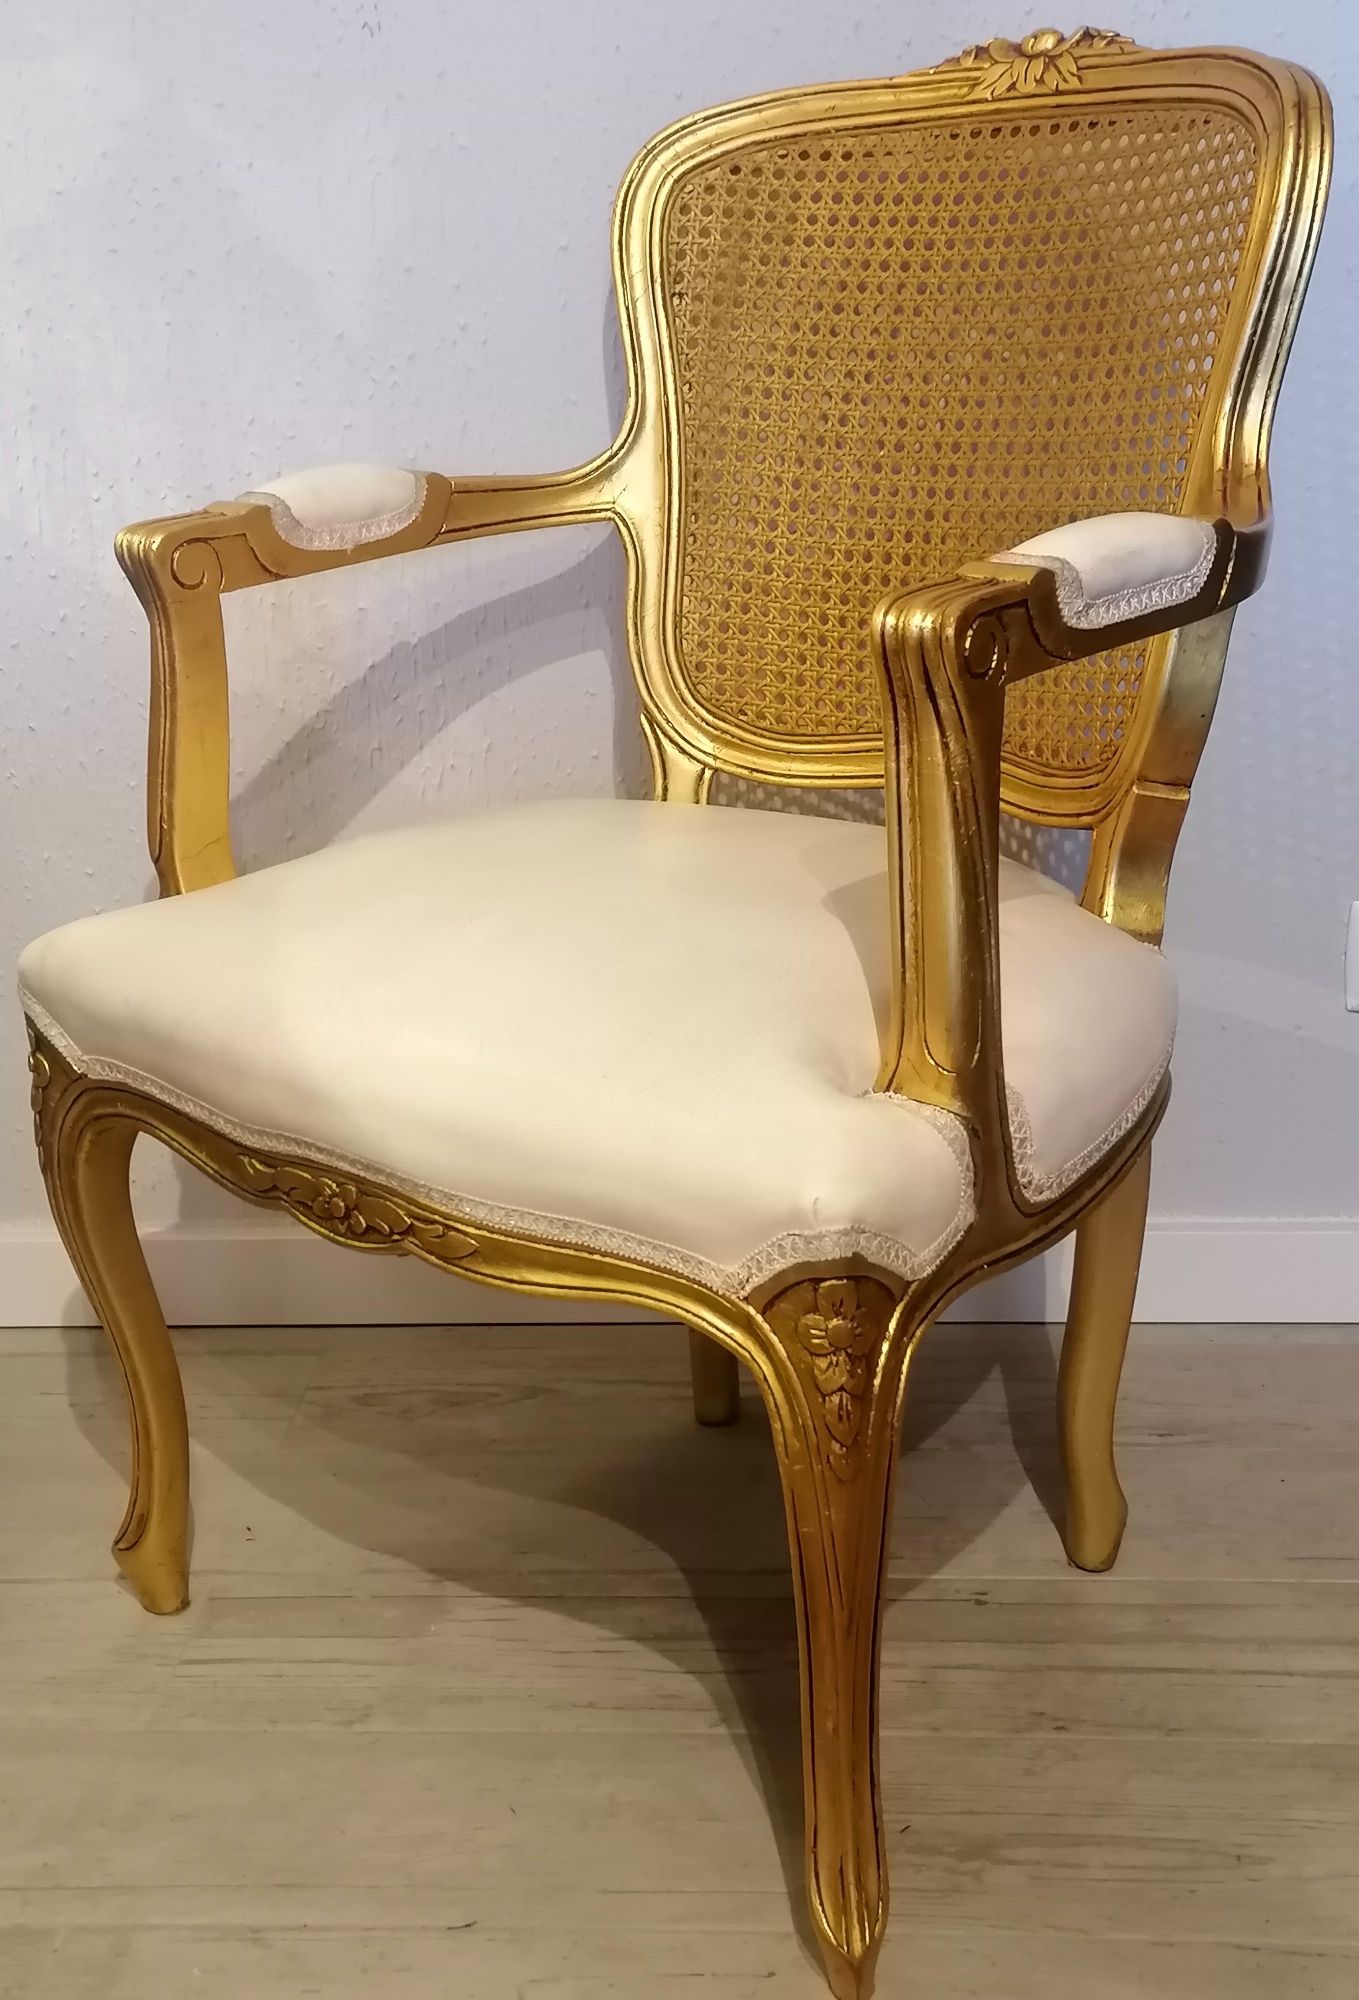 Antiga Bergère Cadeirão Poltrona Cadeira braços, Luís XV Talha dourada